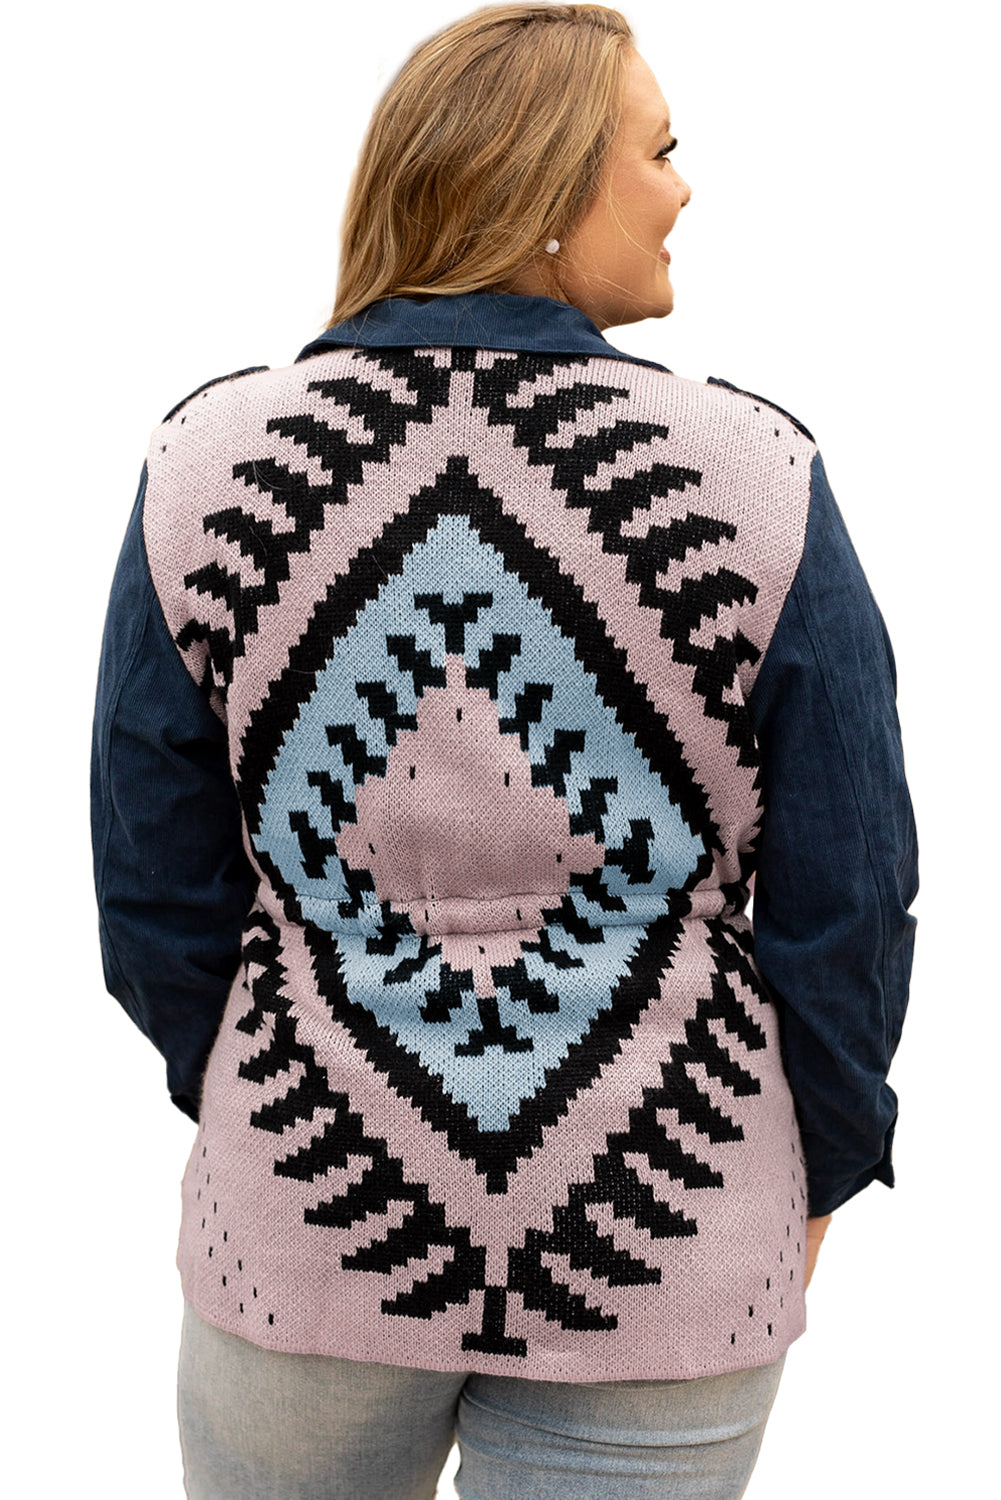 Blue Plus Size Corduroy Jacquard Knit Back Jacket - Bellisima Clothing Collective